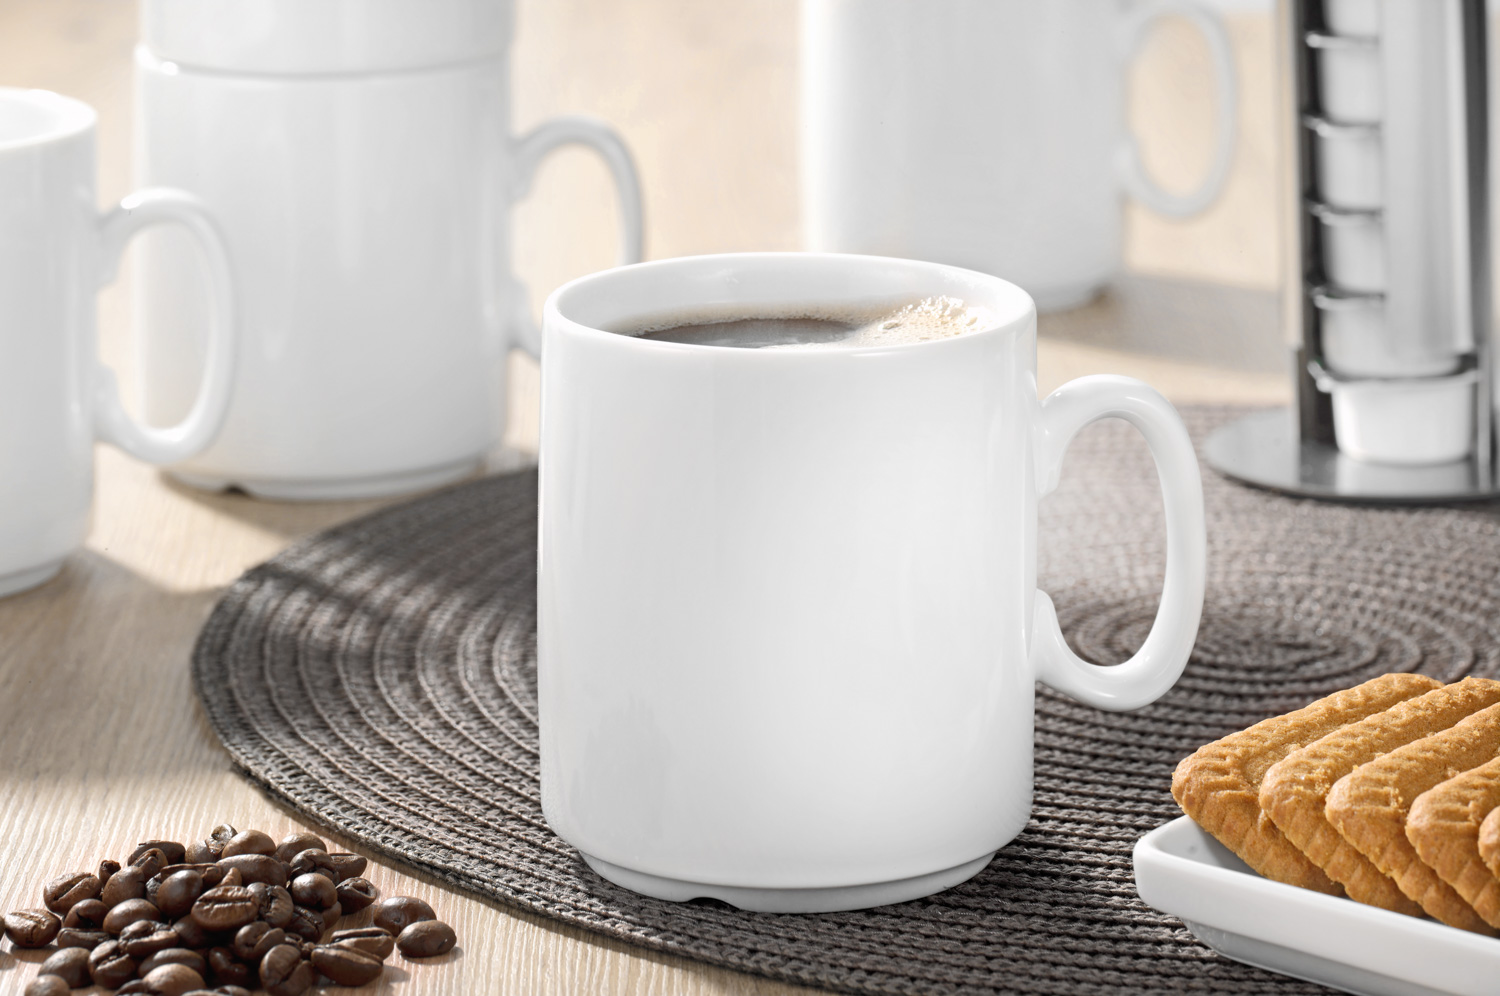 Kaffeebecher DIANE, Inhalt: 0,28 L, von caterado. Höhe: 8,9 cm, Durchmesser: 8,1 cm, aus weißem, hochwertigem Porzellan.